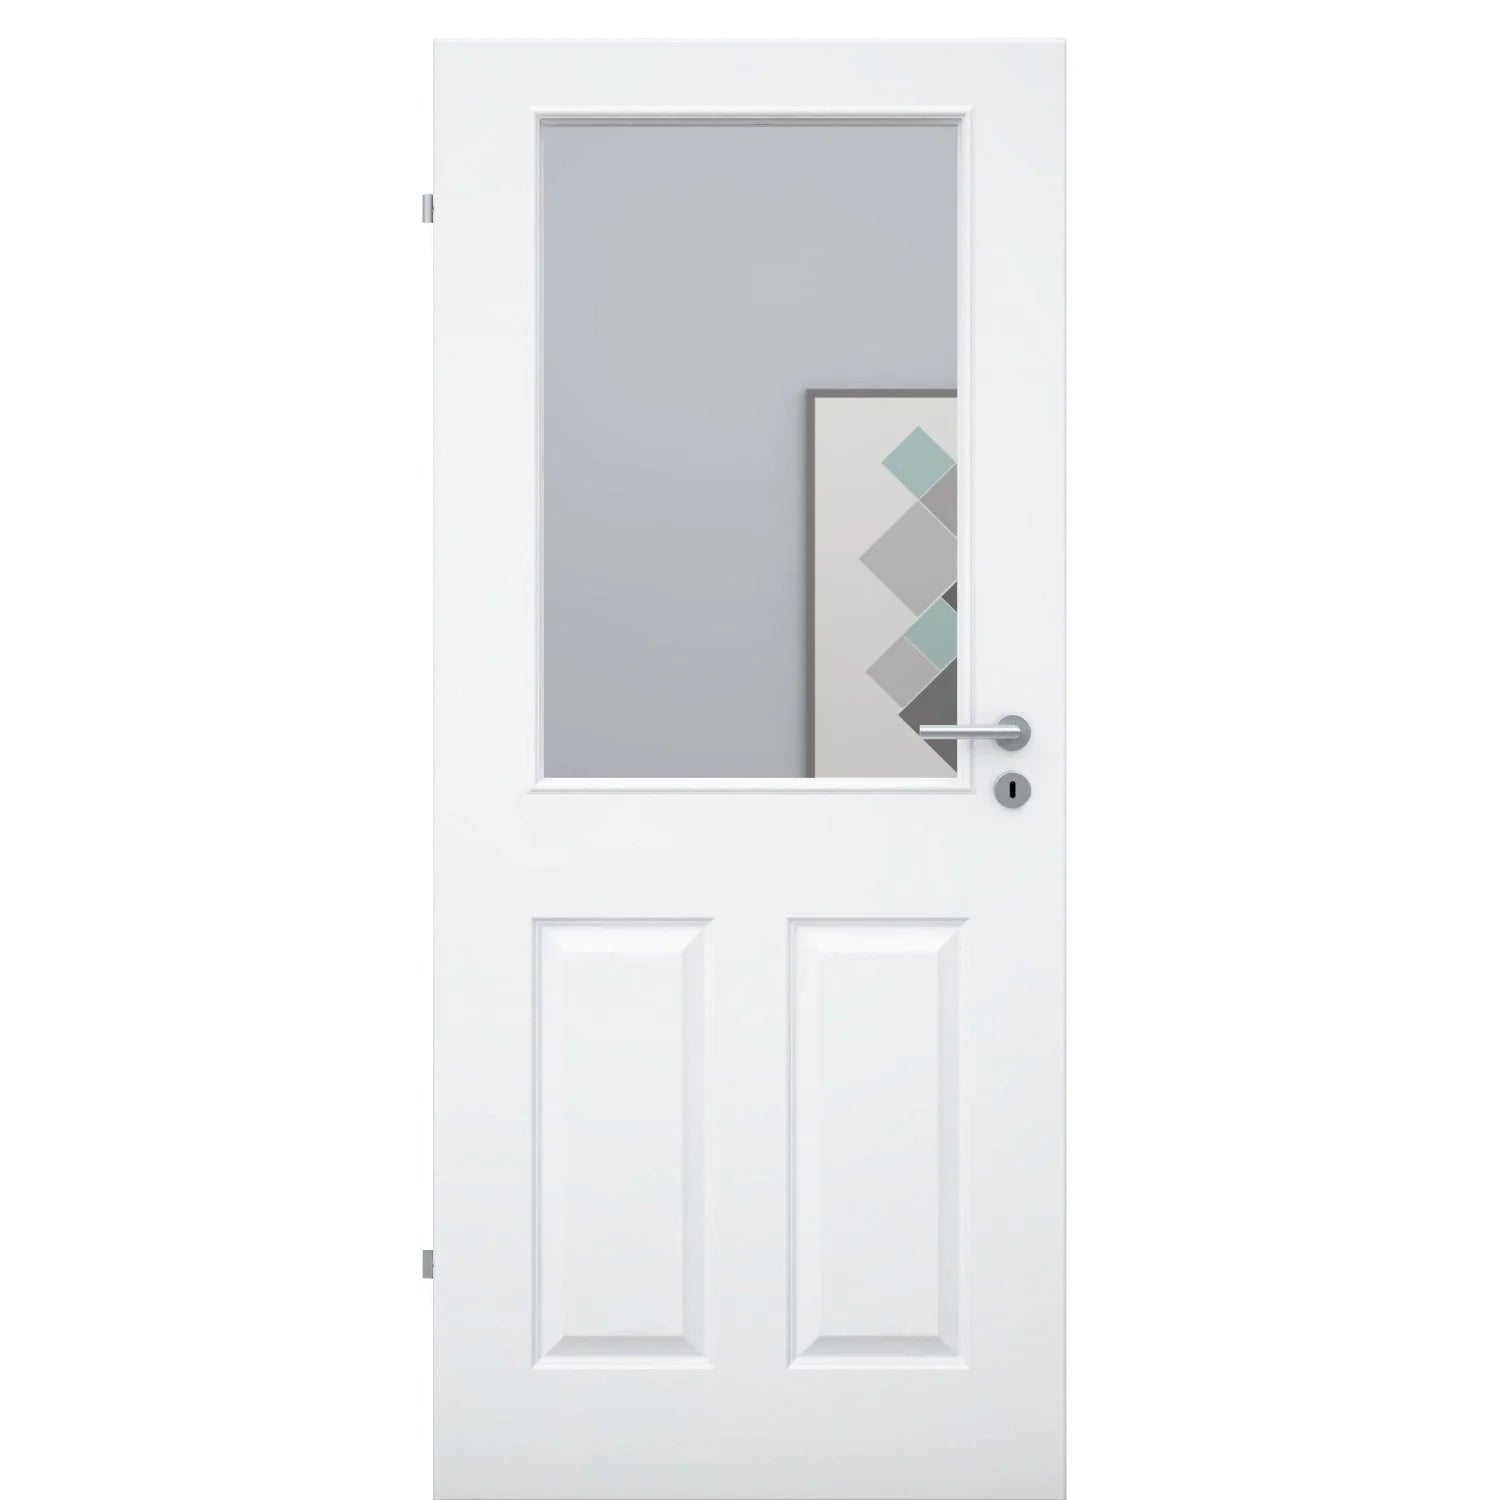 Zimmertür mit Lichtausschnitt brillant-weiß 4 Kassetten Designkante - Modell Stiltür K43LA